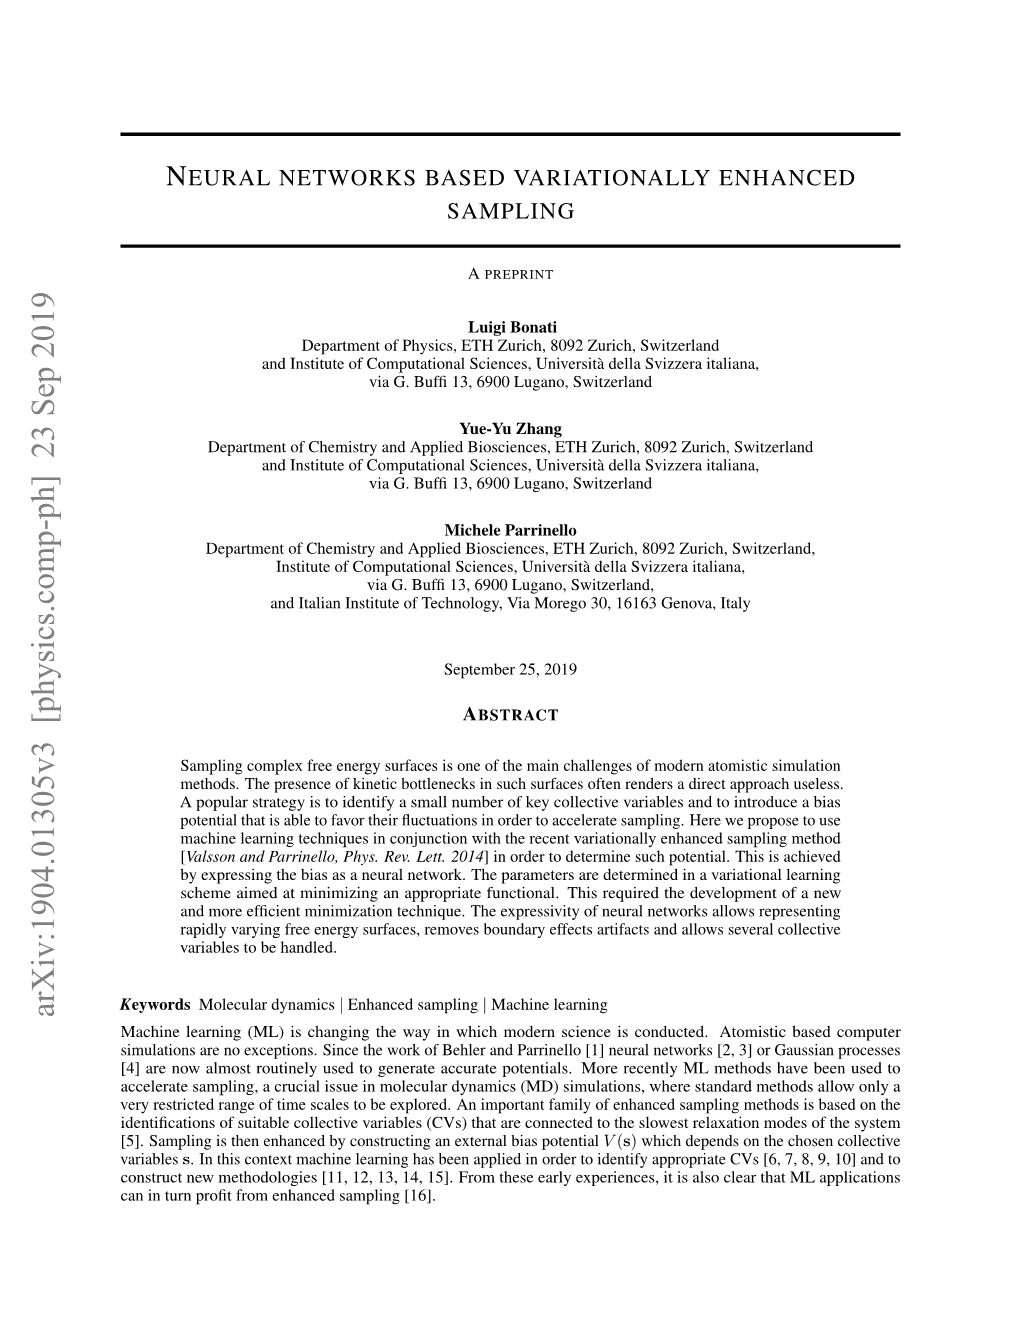 Neural Networks Based Variationally Enhanced Sampling